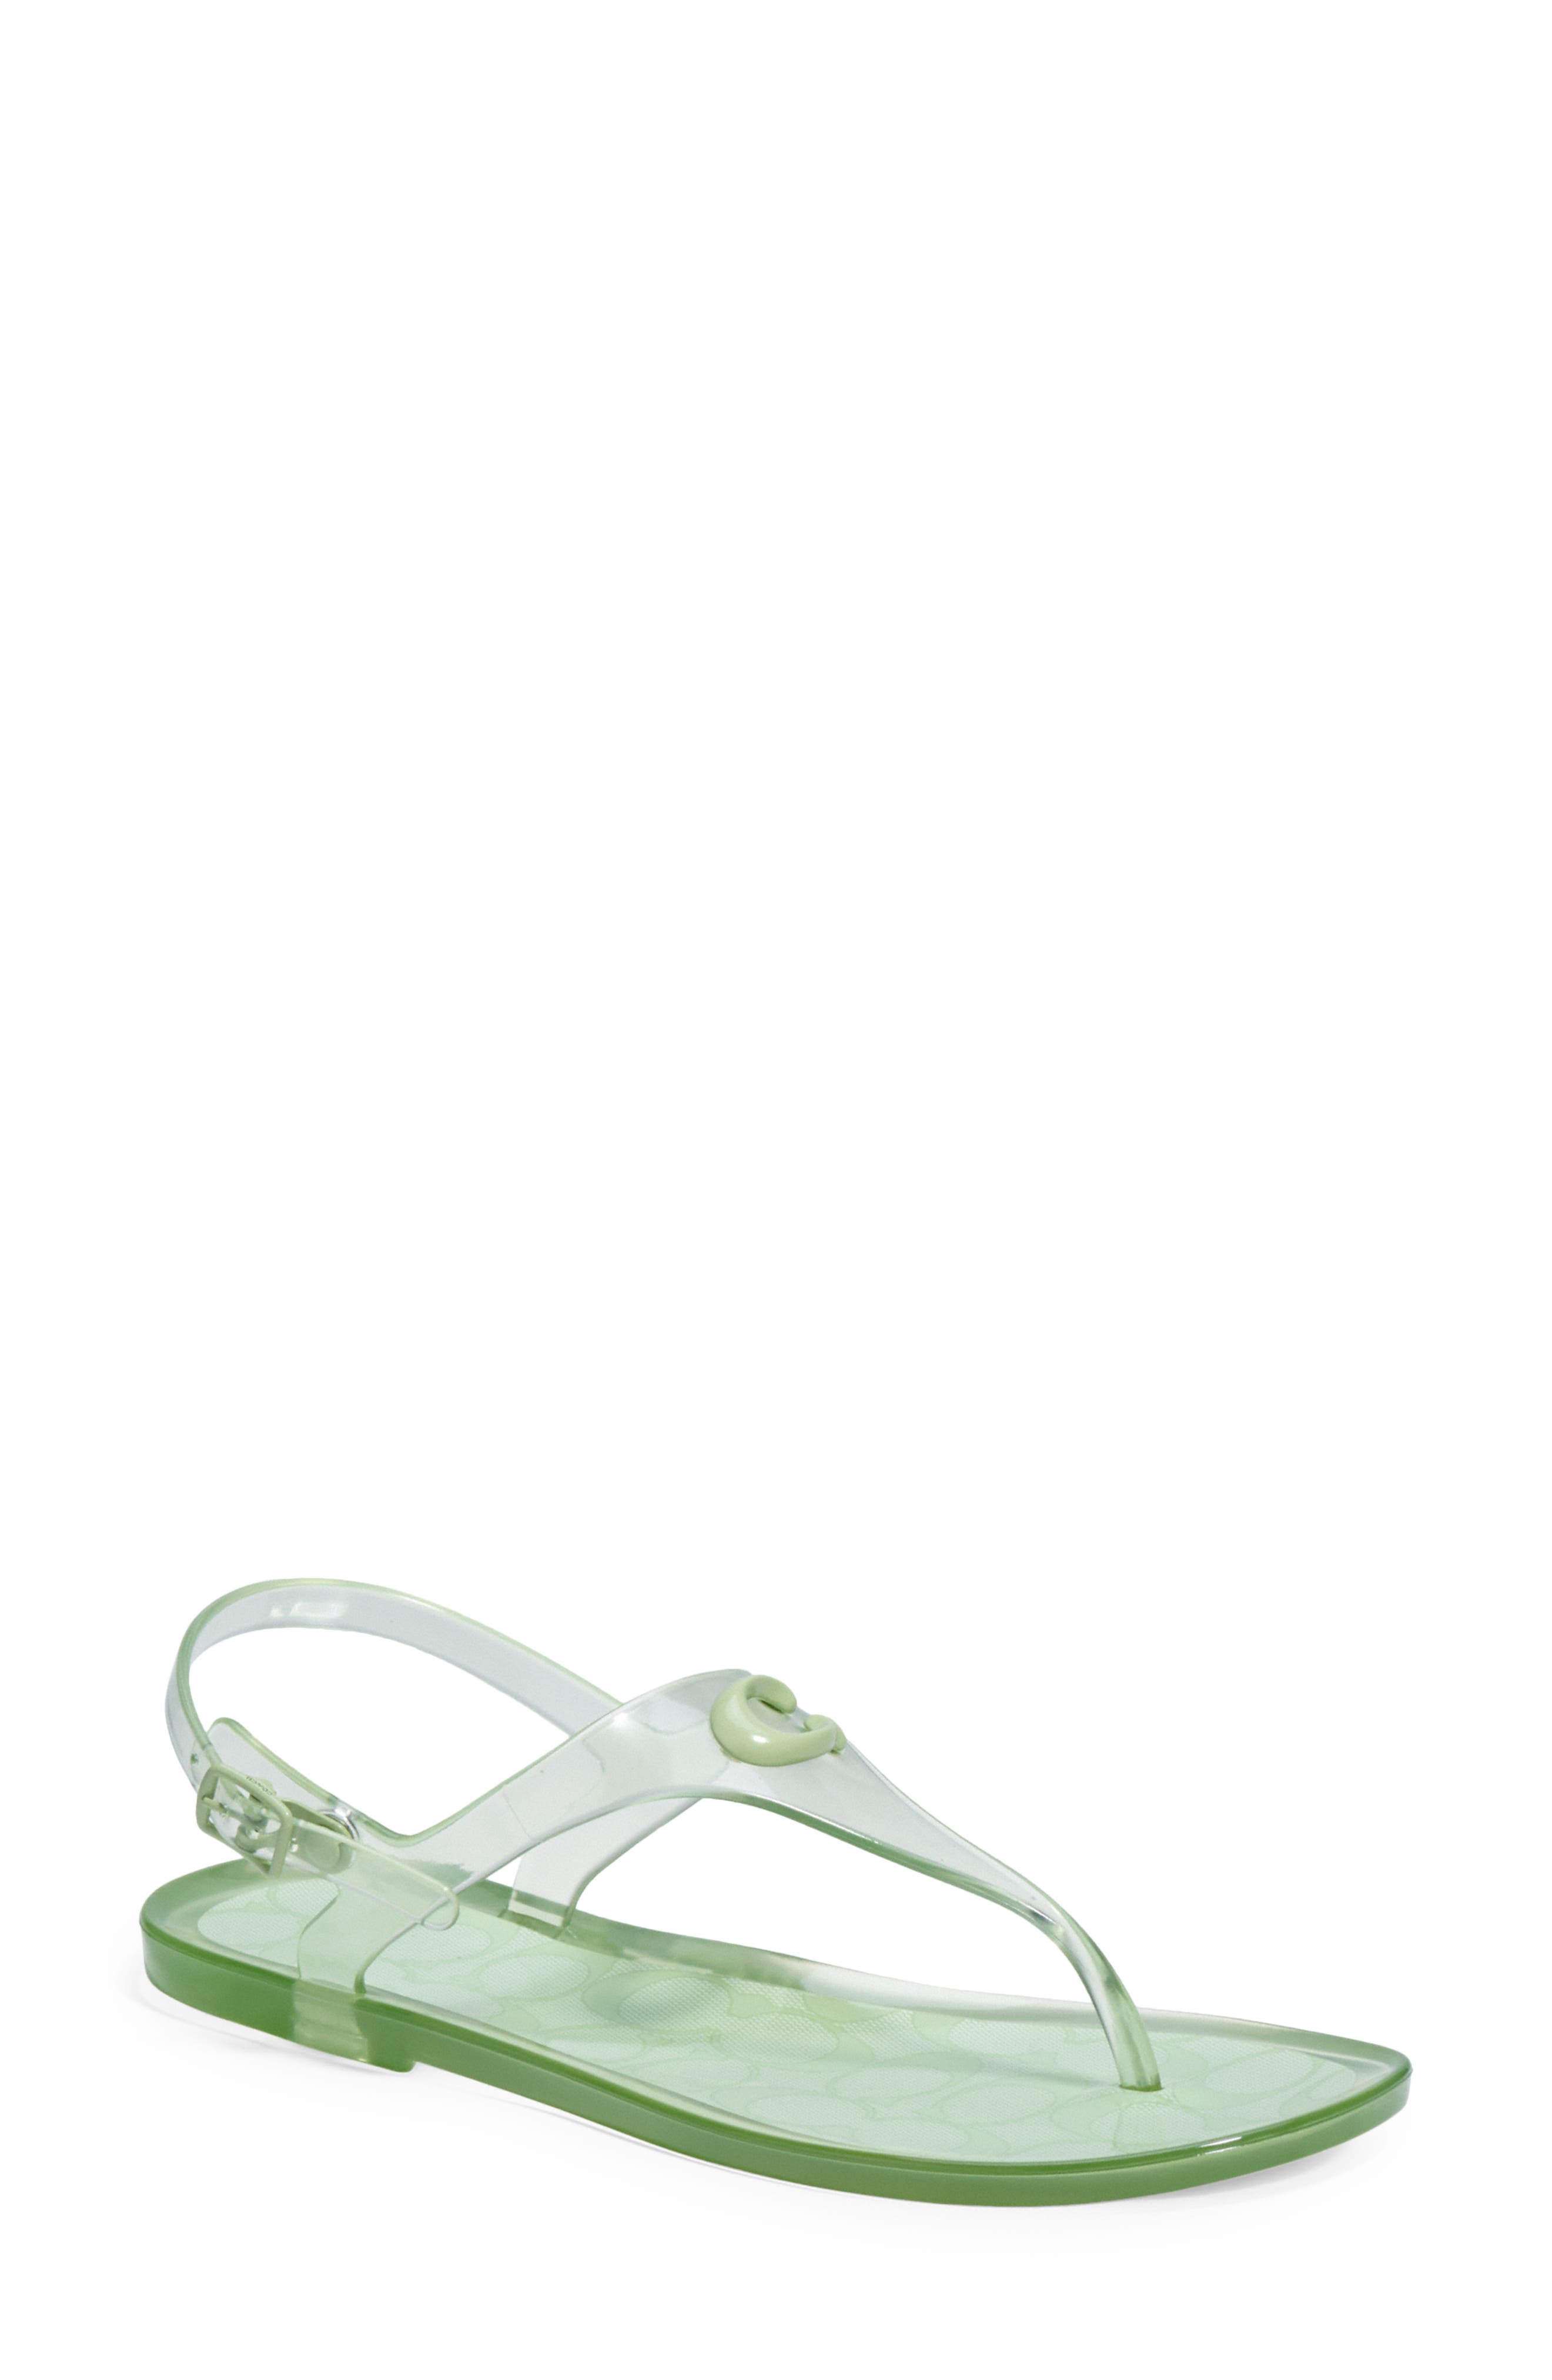 New 2019 Summer Shoes Women Sandals Casual flip Flops Women Flat Sandals Beach Shoes,White,6.5